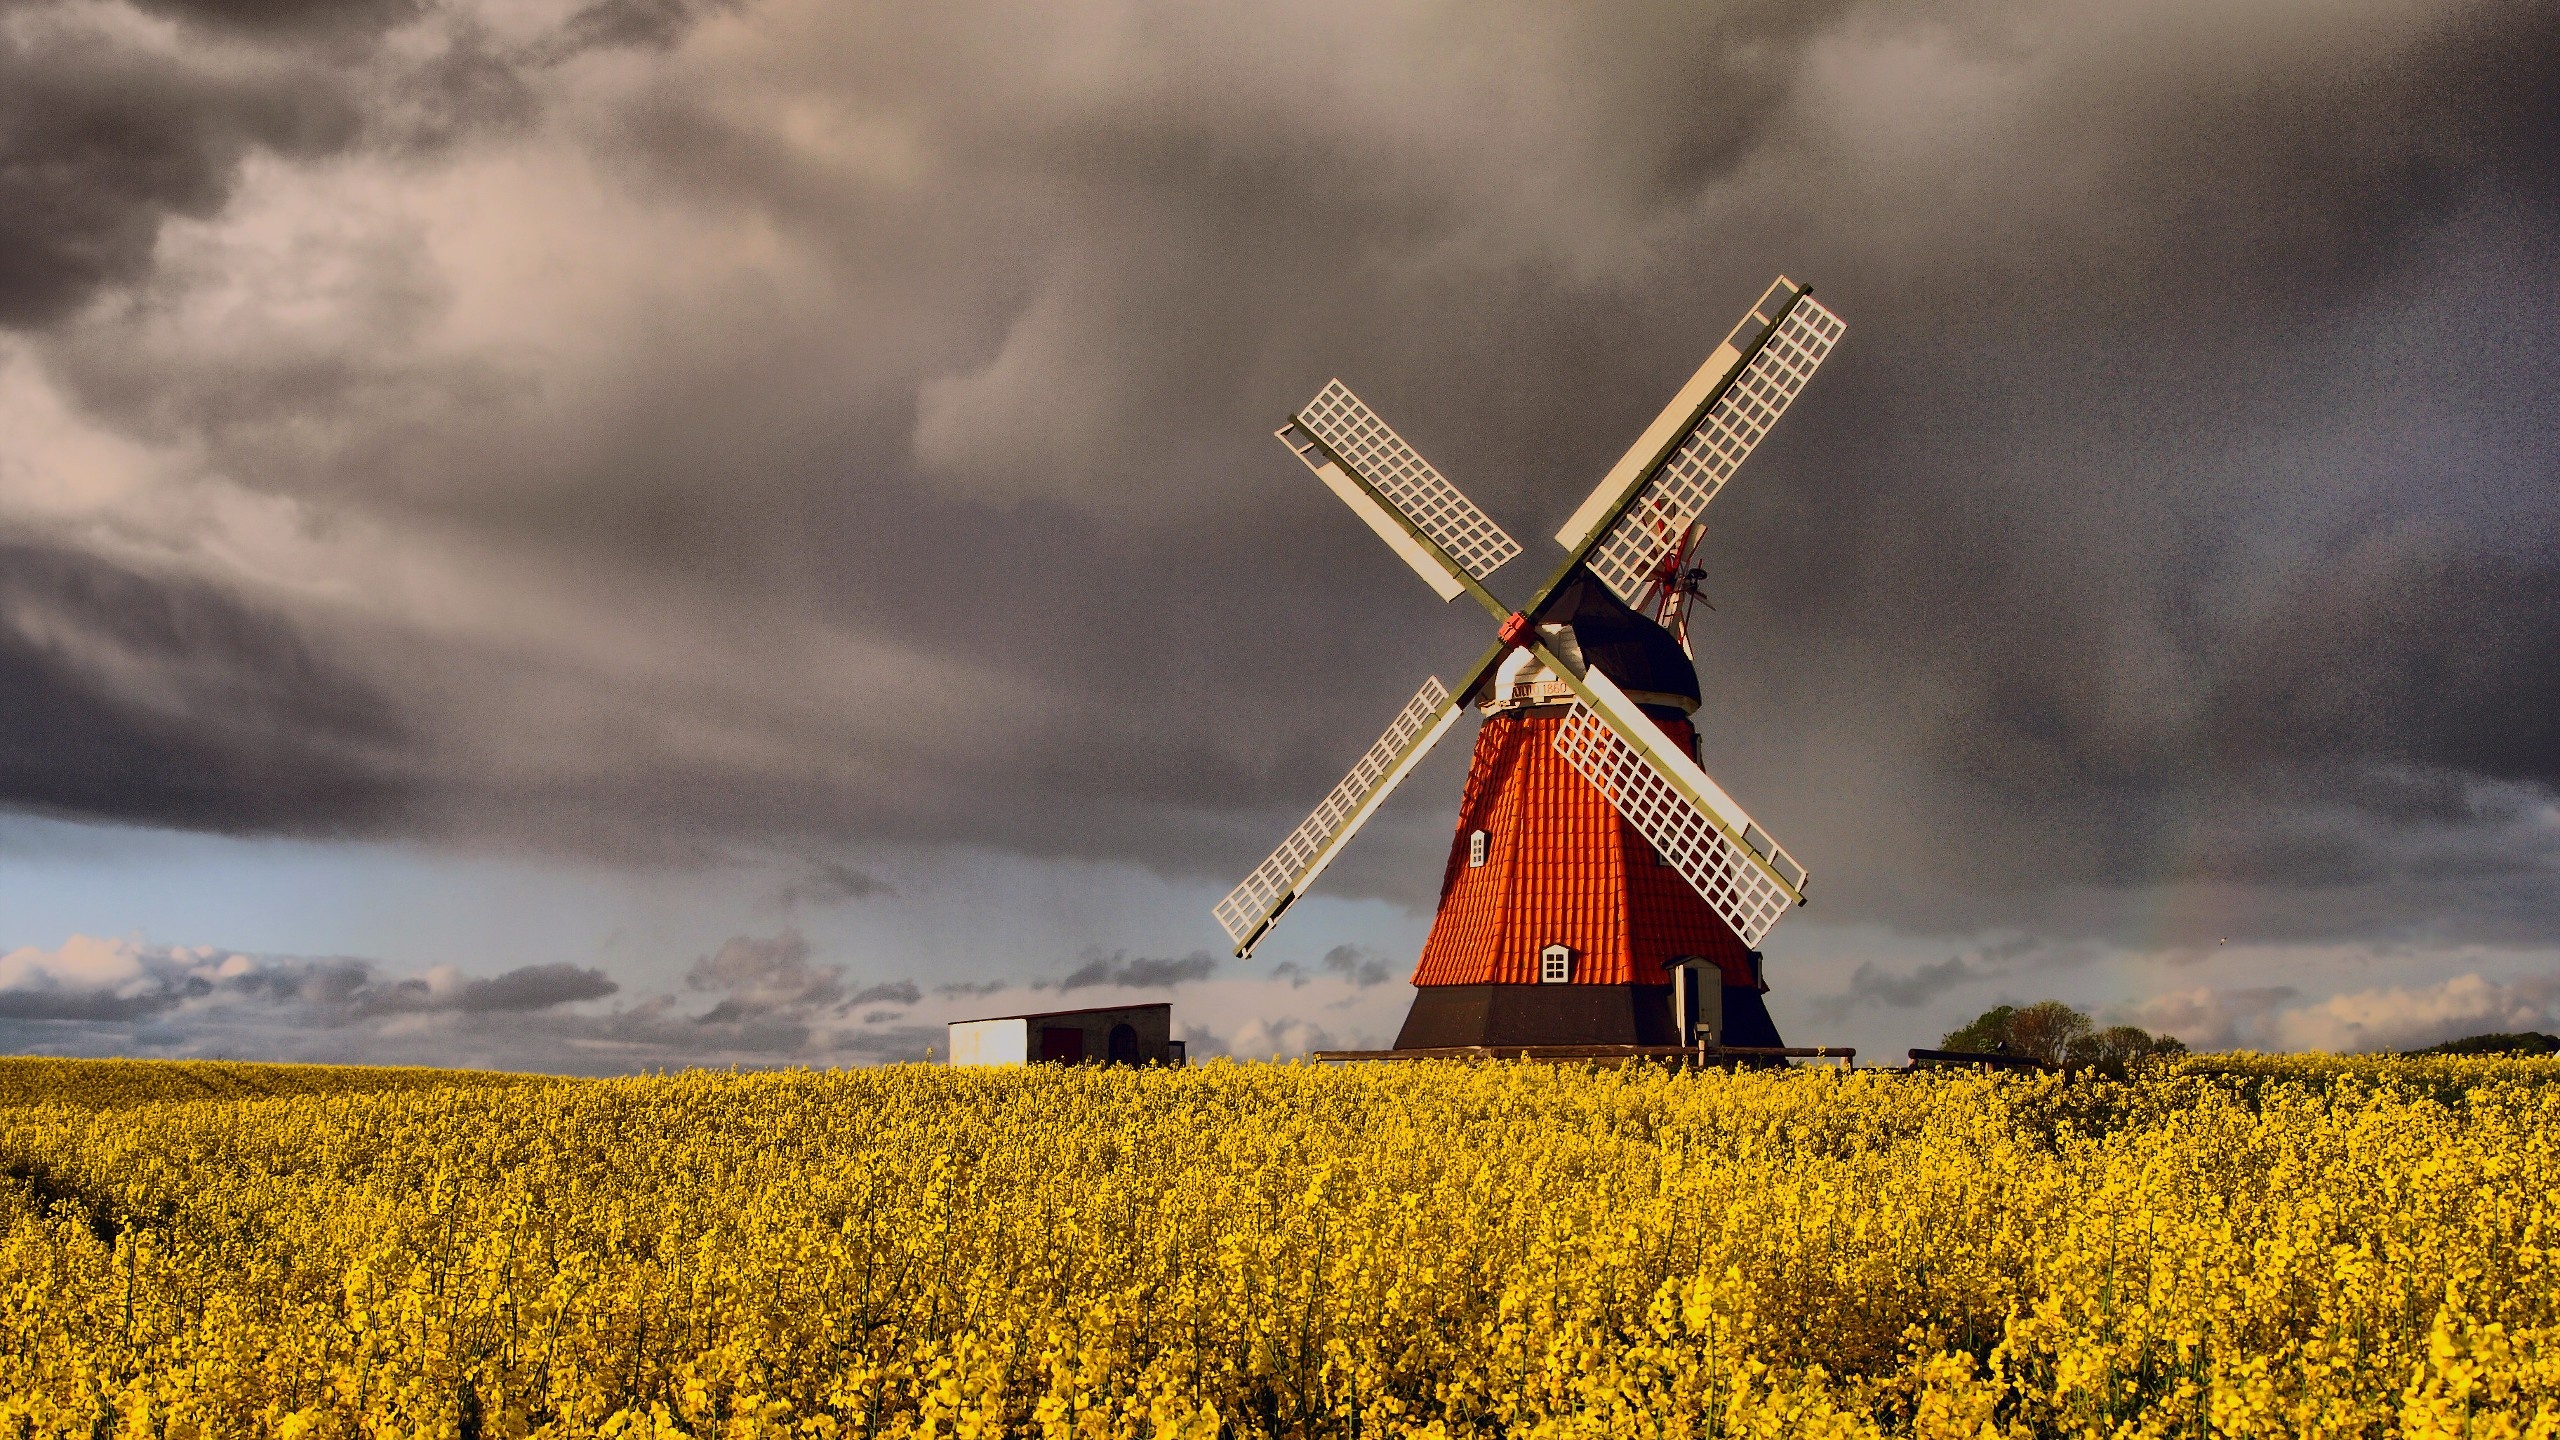 Windmills in Denmark, Cloud-filled skies, Grain fields backdrop, Rural charm, 2560x1440 HD Desktop